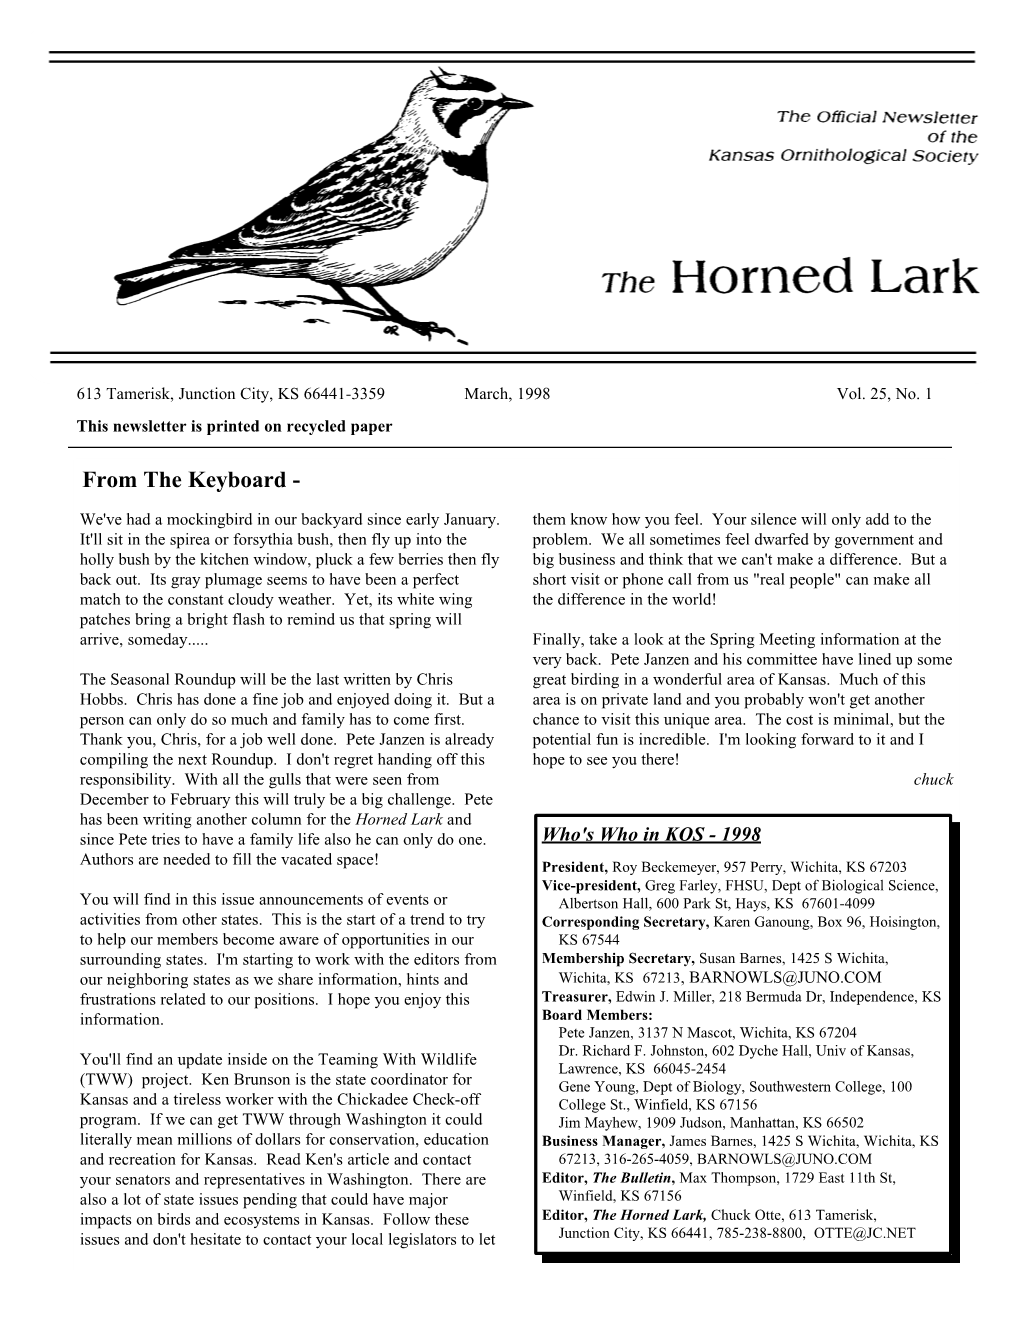 Horned Lark, March 1998 Issue